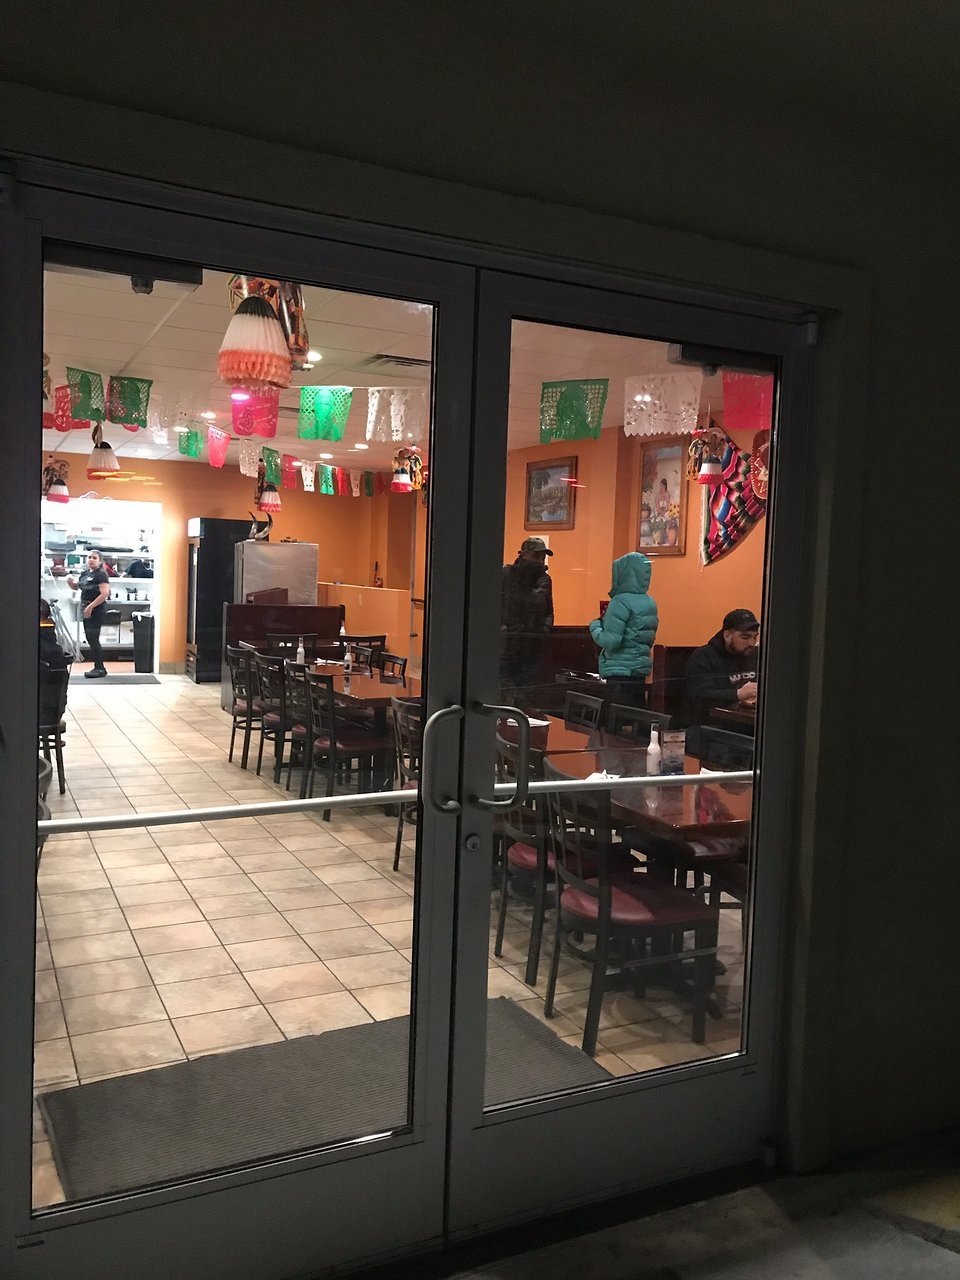 San Antonio Mexican Restaurant